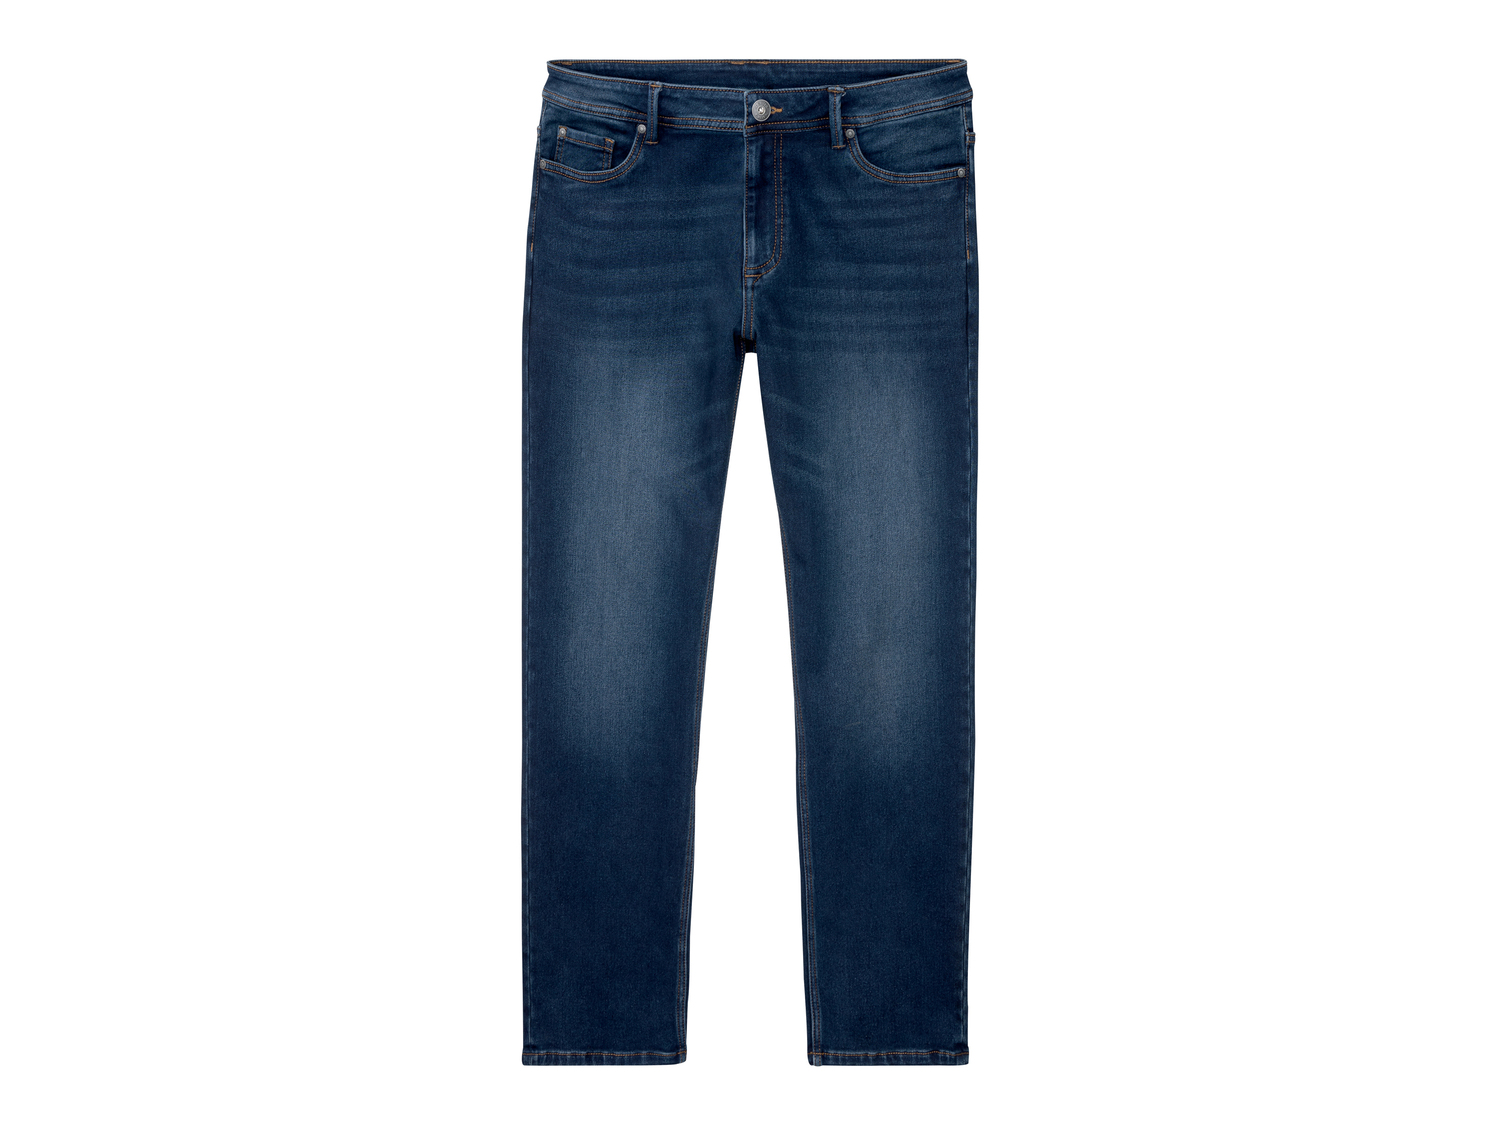 Jeans da uomo Livergy, prezzo 11.99 &#8364; 
Misure: 46-56
Taglie disponibili

Caratteristiche

- ...